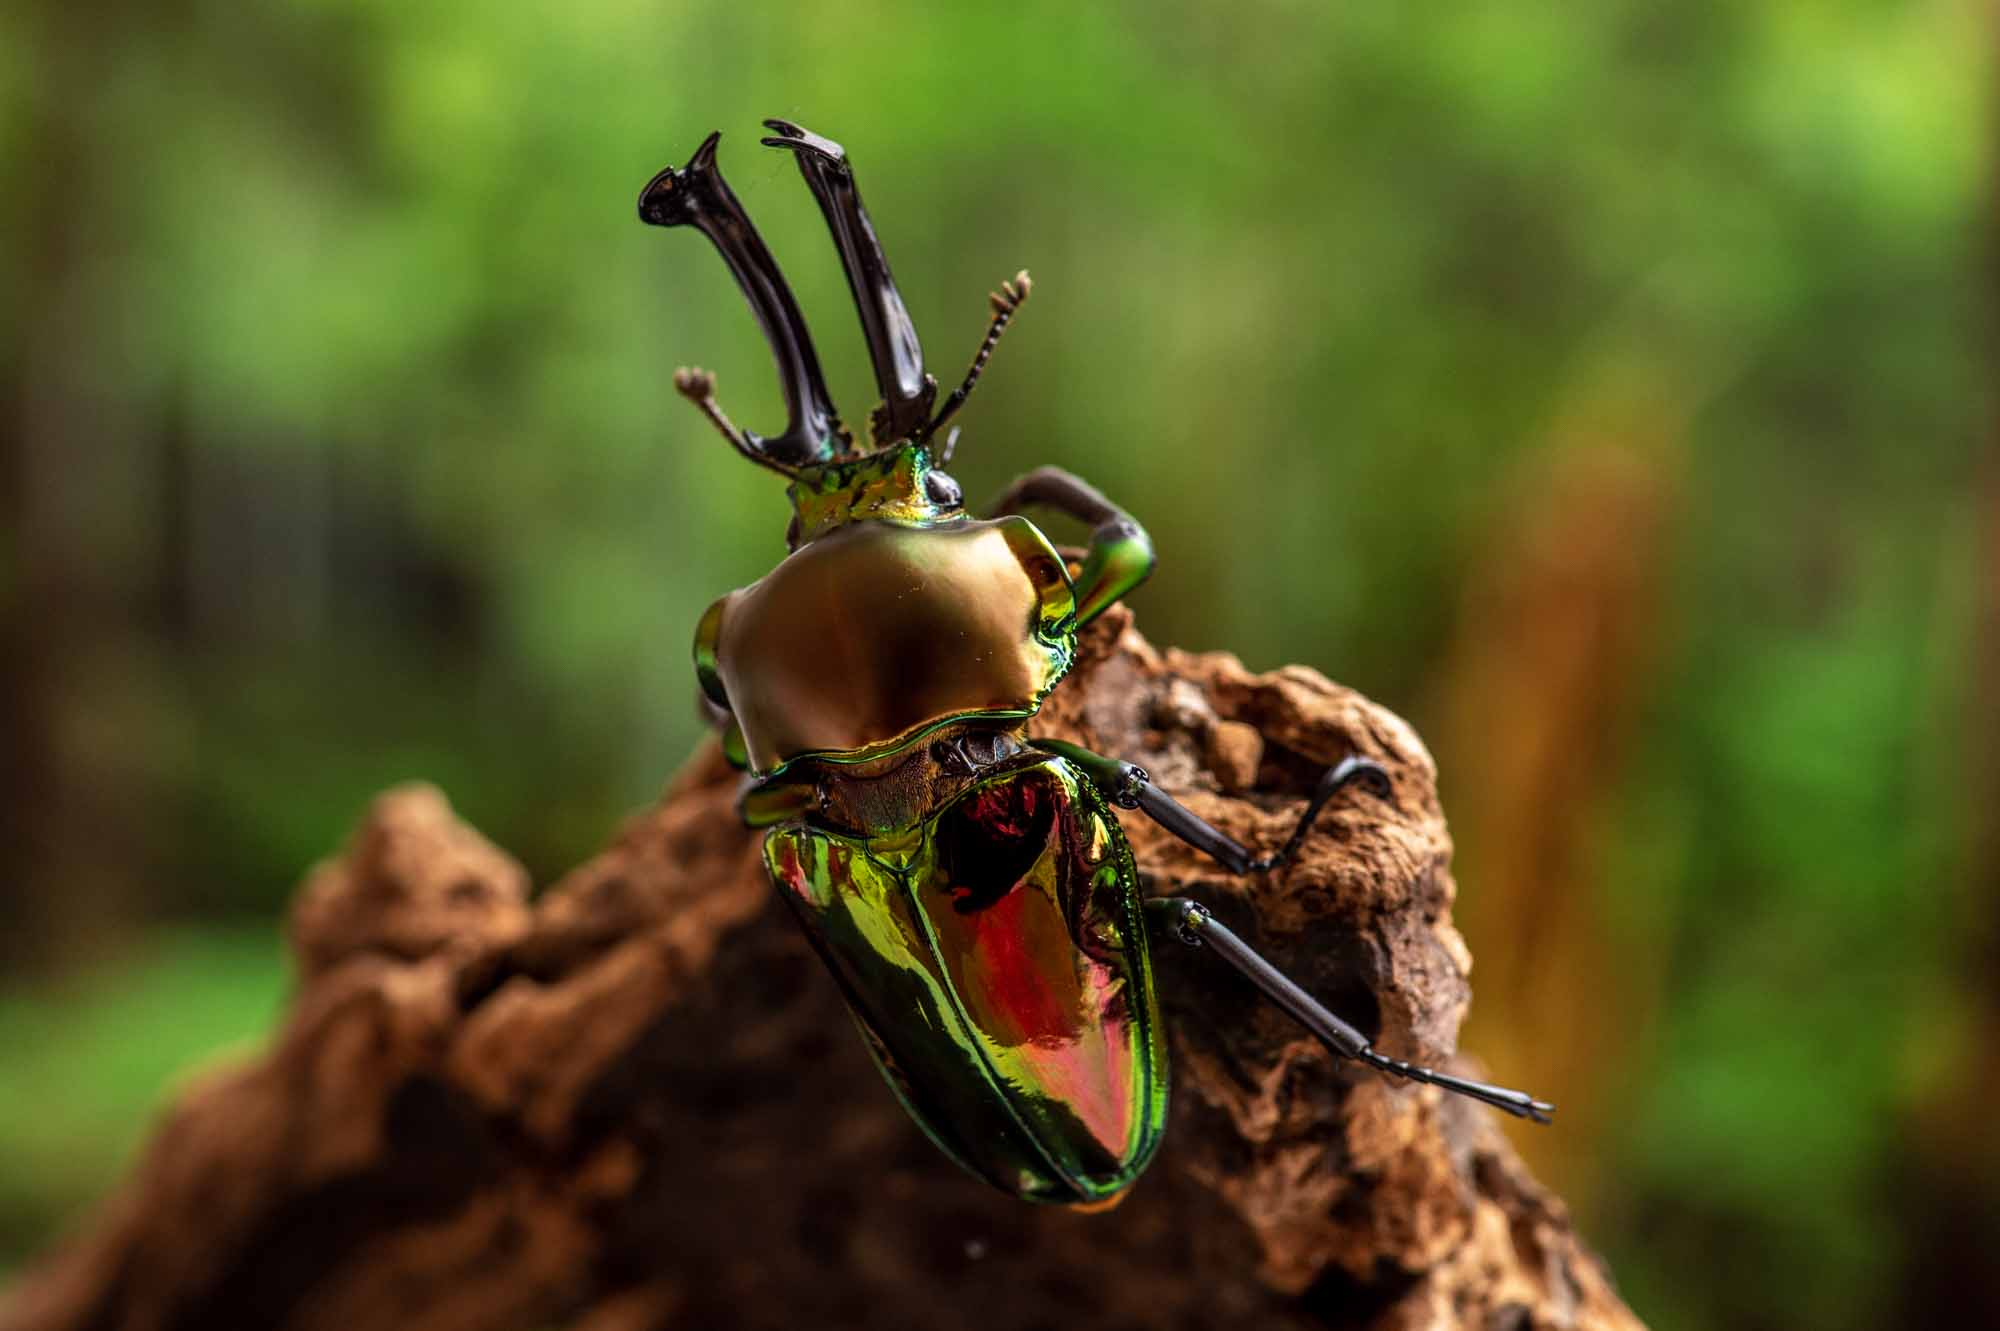 ニジイロクワガタ 虫の写真と生態なら昆虫写真図鑑 ムシミル